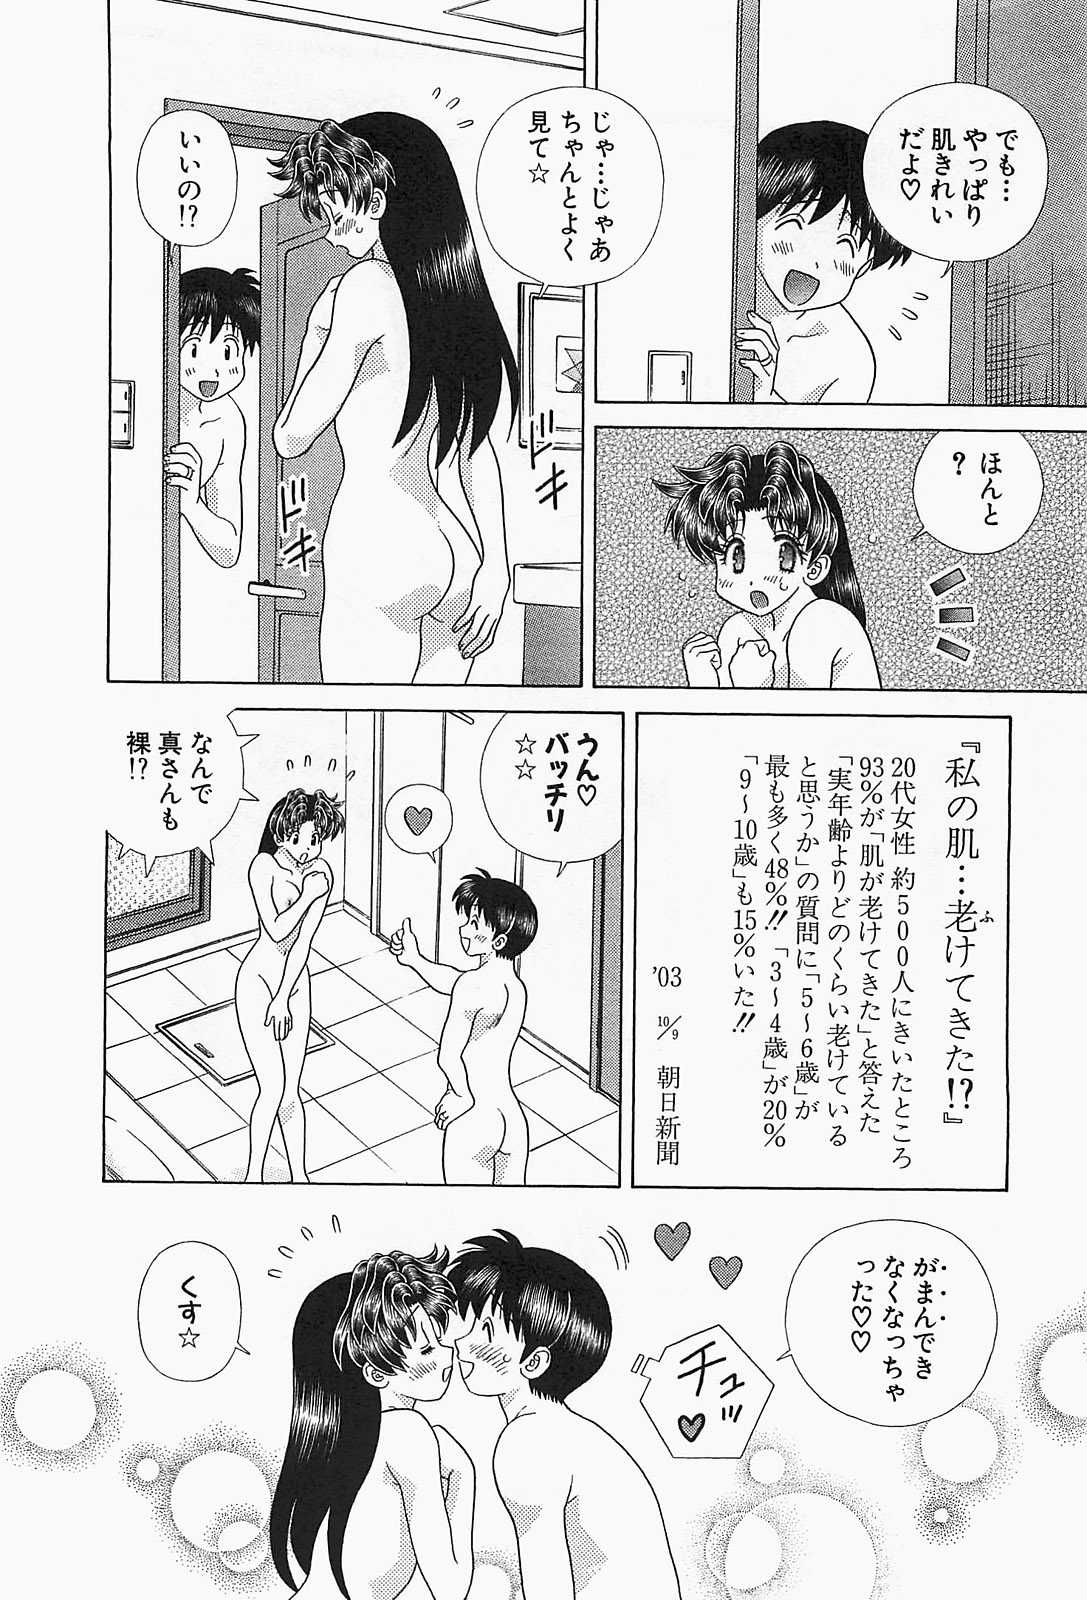 [Katsu Aki] Futari Ecchi Vol. 51 [克亜樹] ふたりエッチ 第51巻